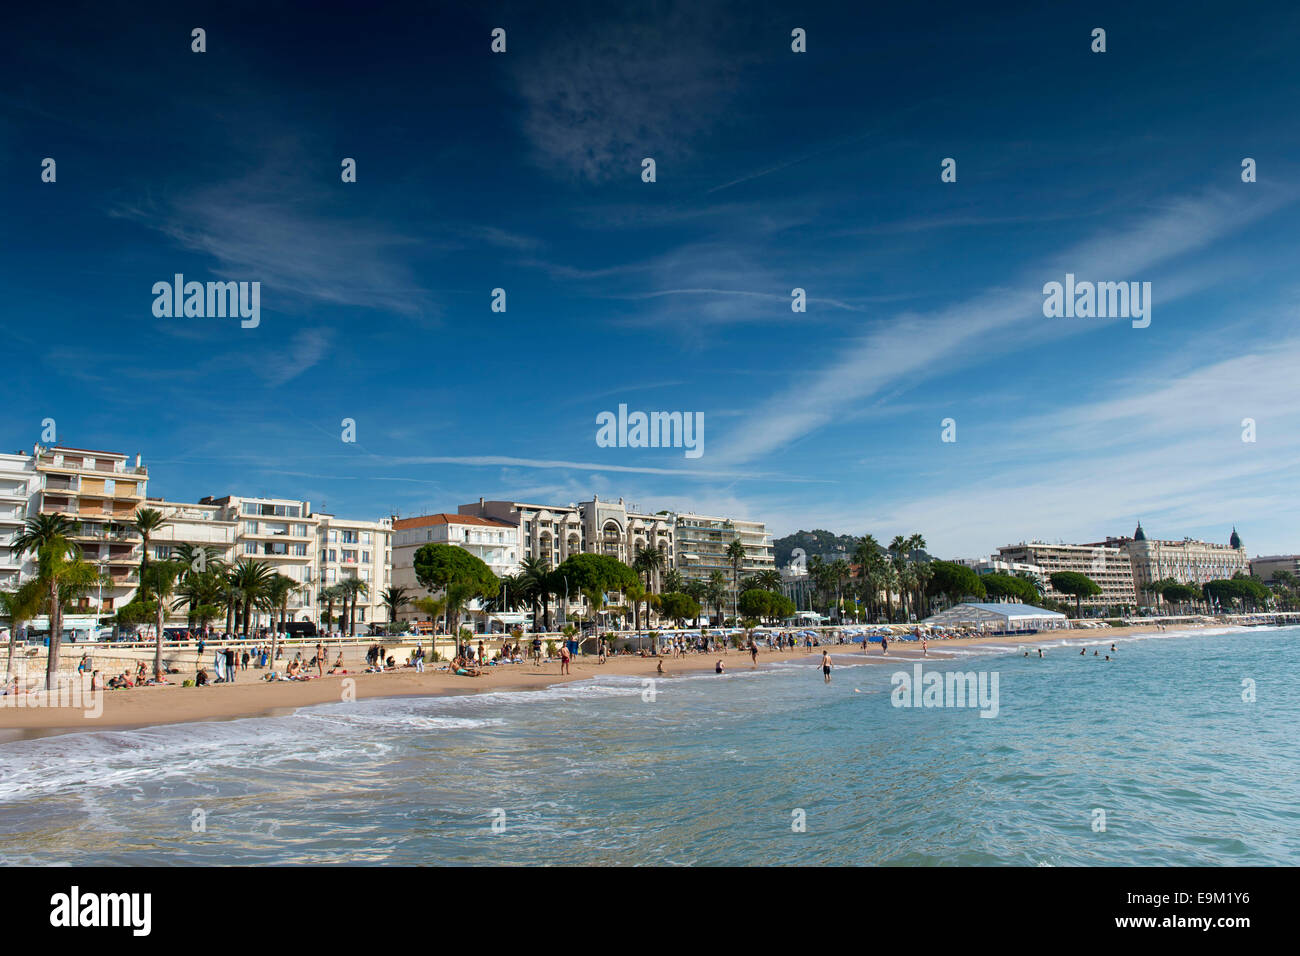 Vue générale de la plage de Cote d Azur de Cannes, sud de la France, sur la route de La Croisette. Banque D'Images